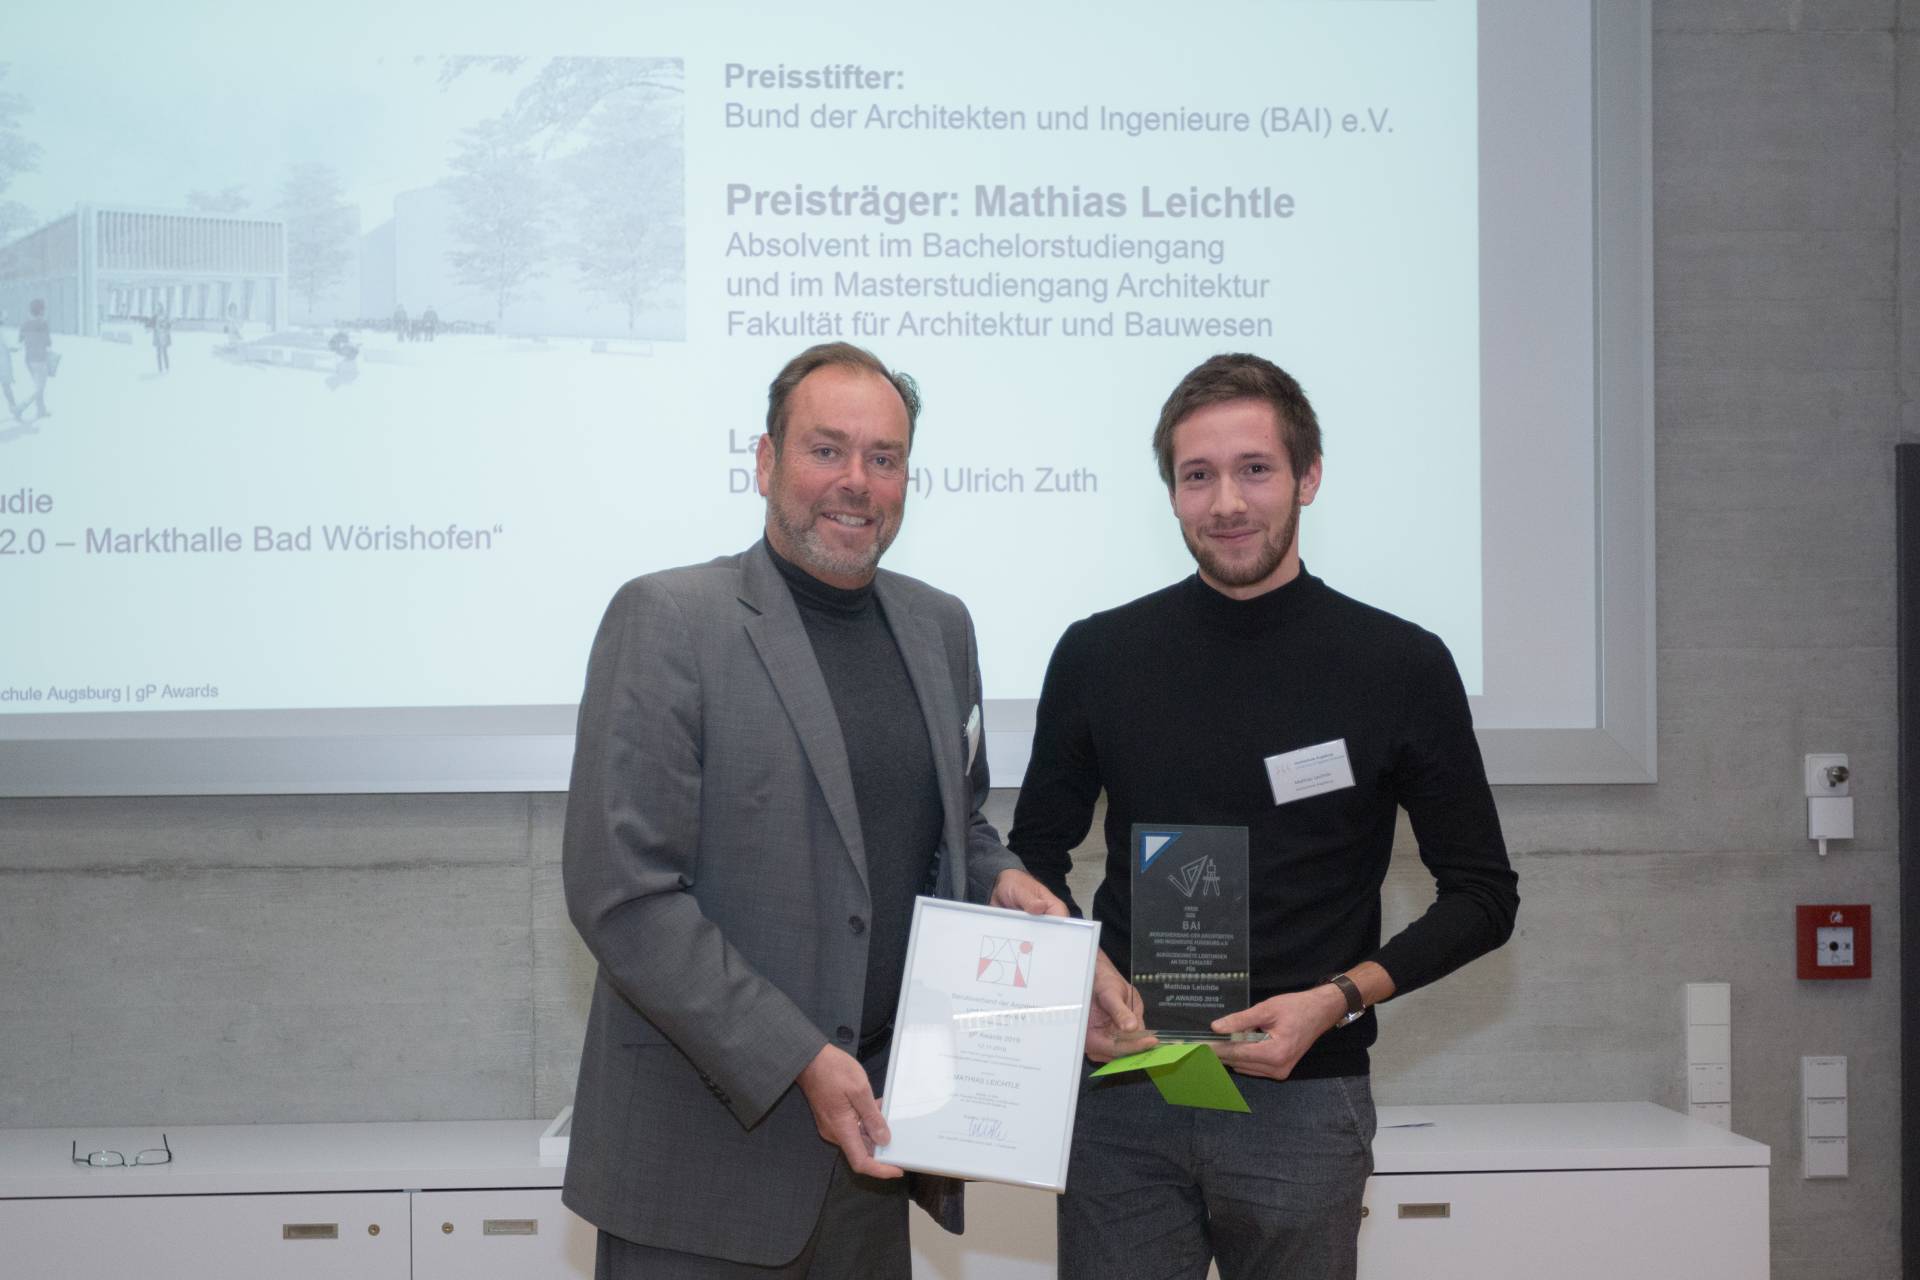 Ulrich Zuth übergibt den Preis des Bundes der Architekten und Ingenieure an Mathias Leichtle.